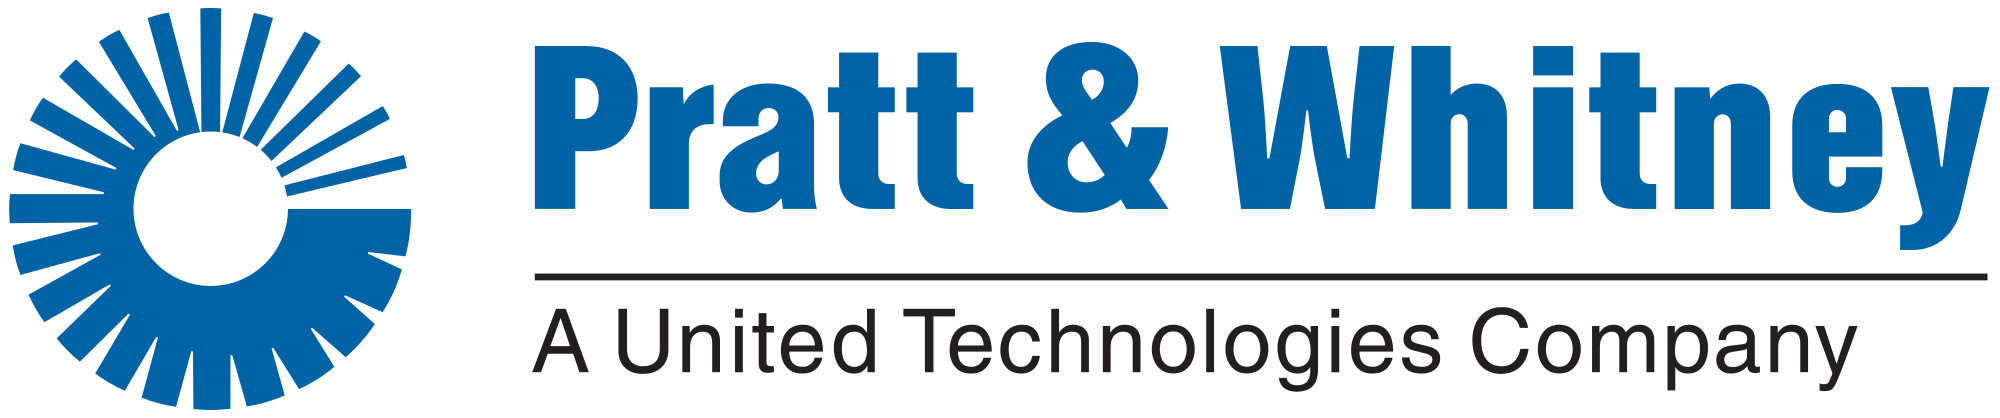 Pratt and Whitney Old Logo - File:Pratt & Whitney UTC logo.svg - Wikimedia Commons